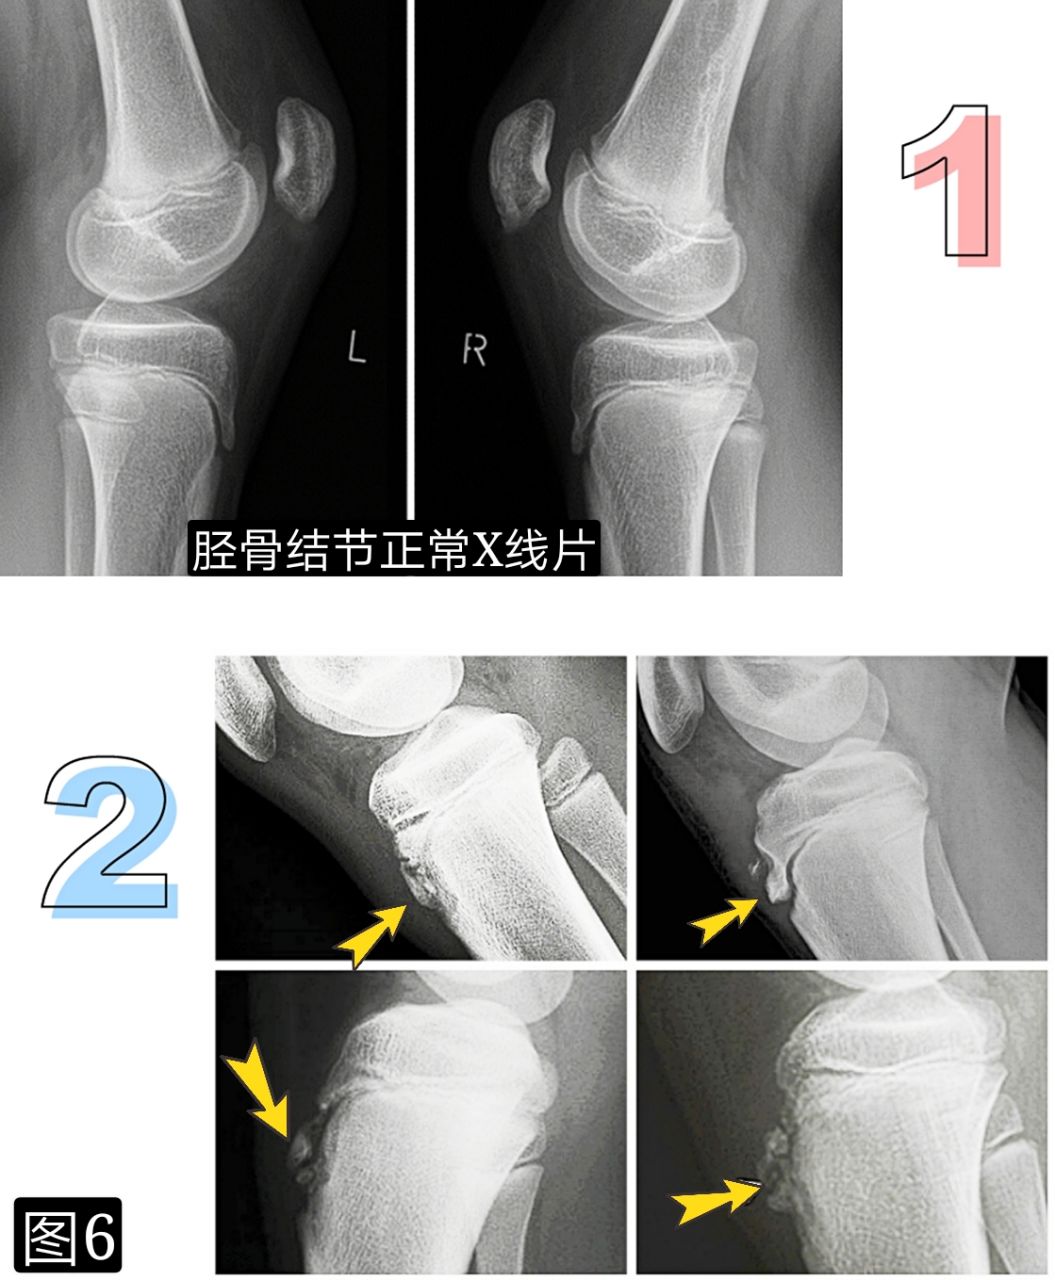 引起膝前痛的胫骨结节骨软骨炎，你会诊治吗?